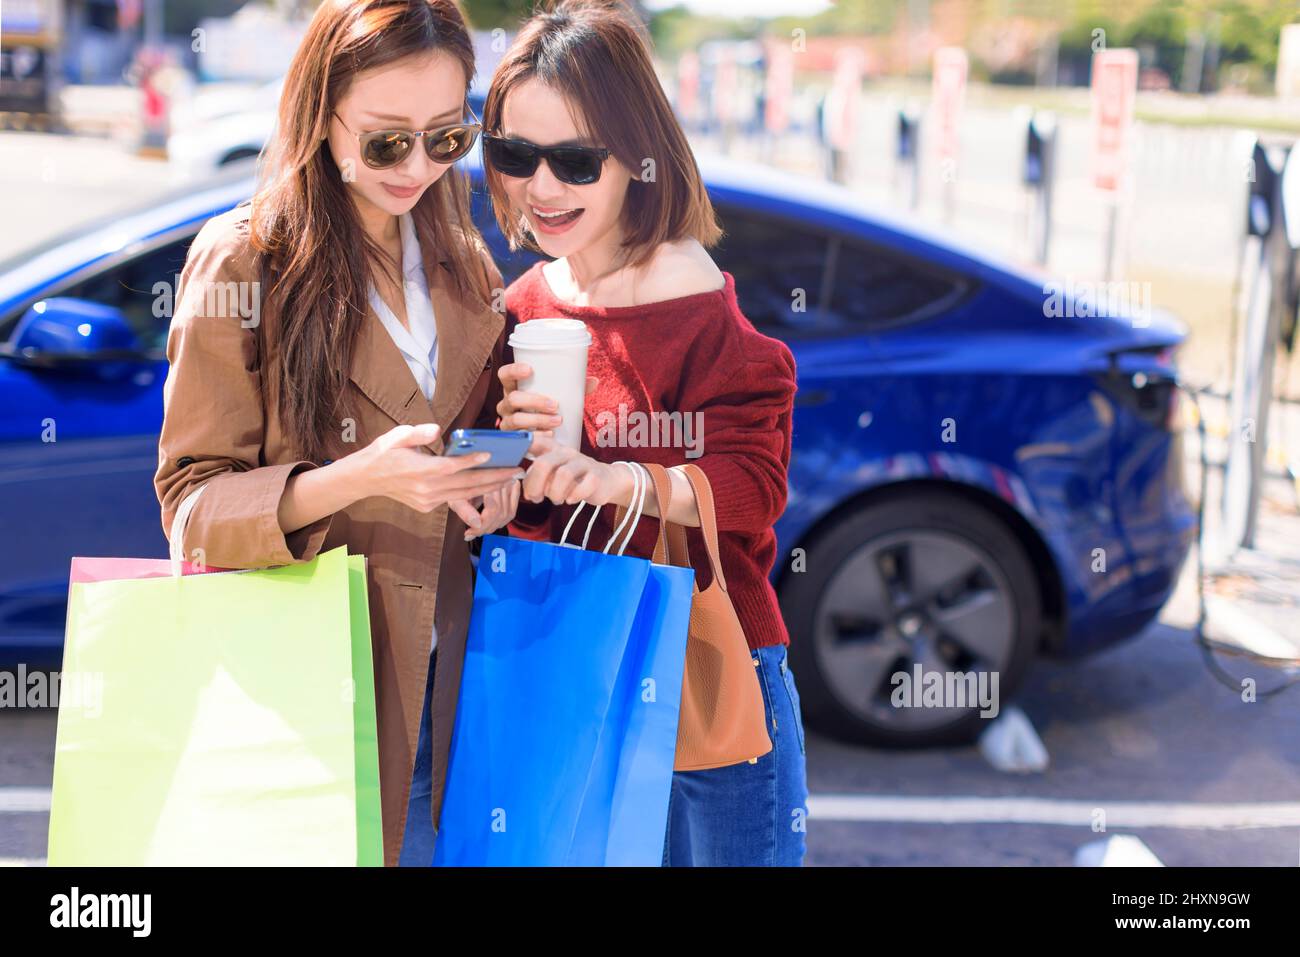 Glückliche junge Frau, die auf dem Stadtparkplatz in der Nähe eines Elektroautos steht, die Autobatterie von einer kleinen Stadtstation lädt, Einkaufstaschen hält und zuschaut Stockfoto